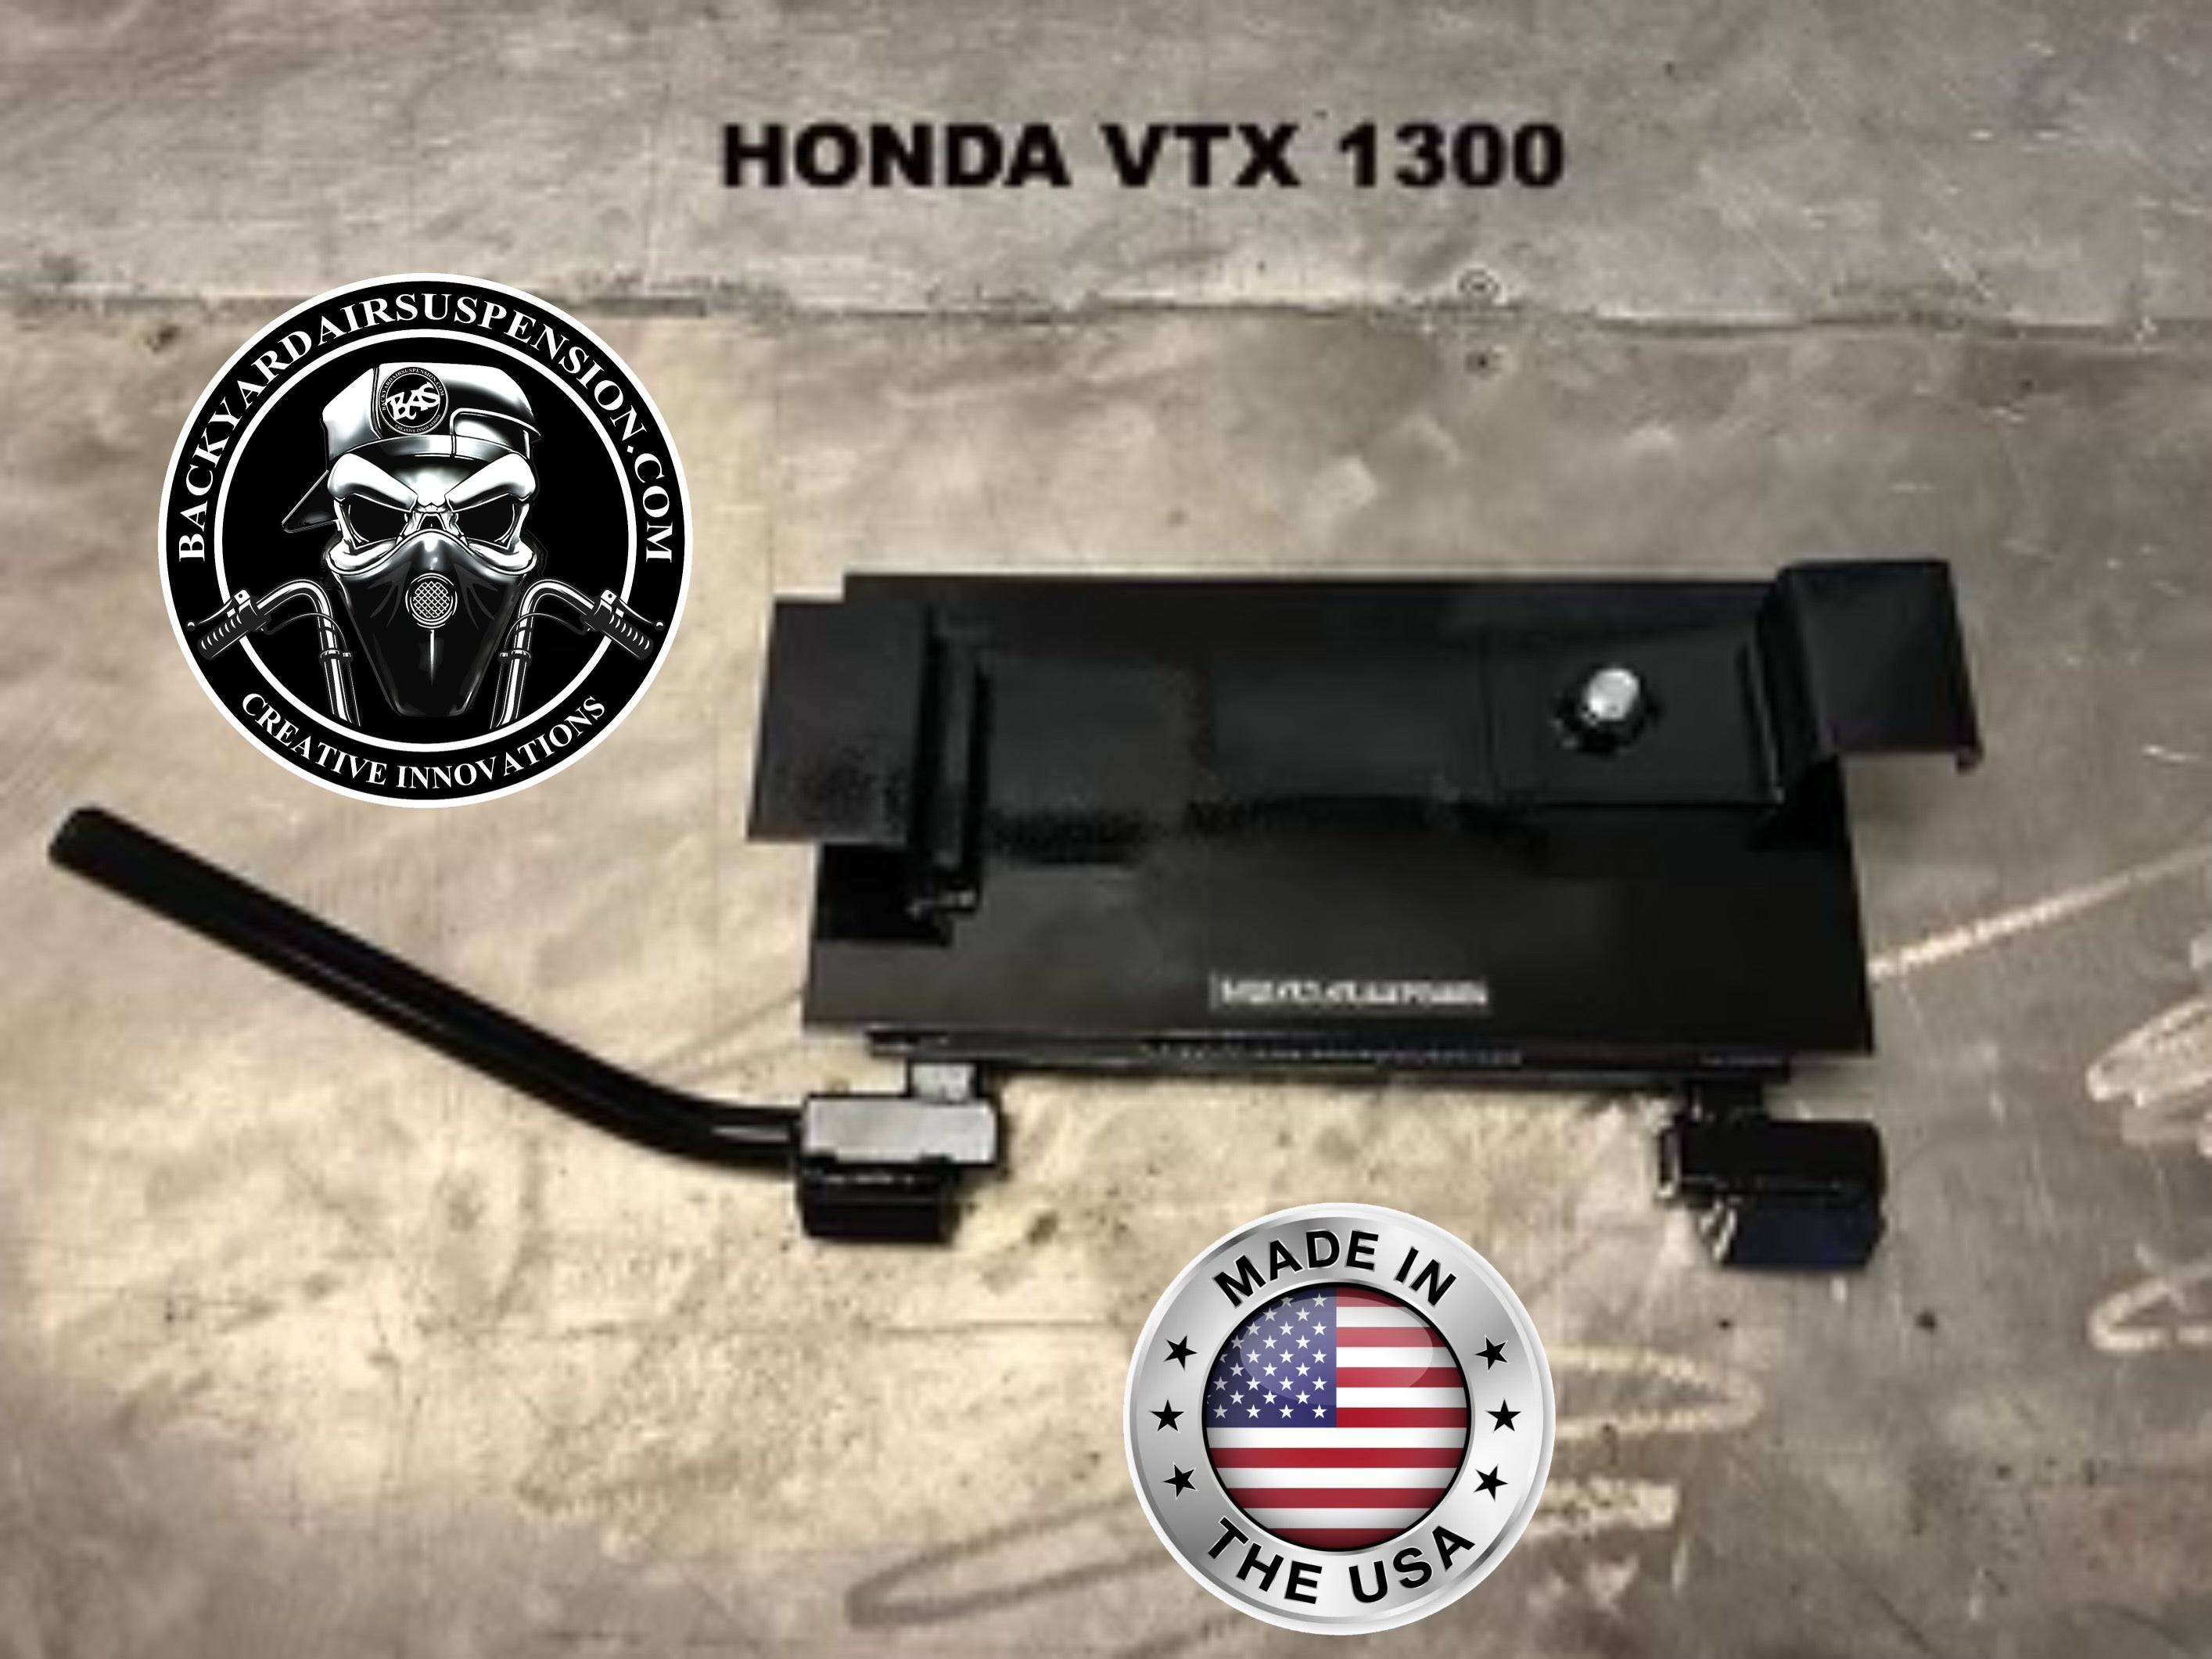 Honda VTX 1300 Manual Center Stand - Backyard Air Suspension & Innovations, LLC.